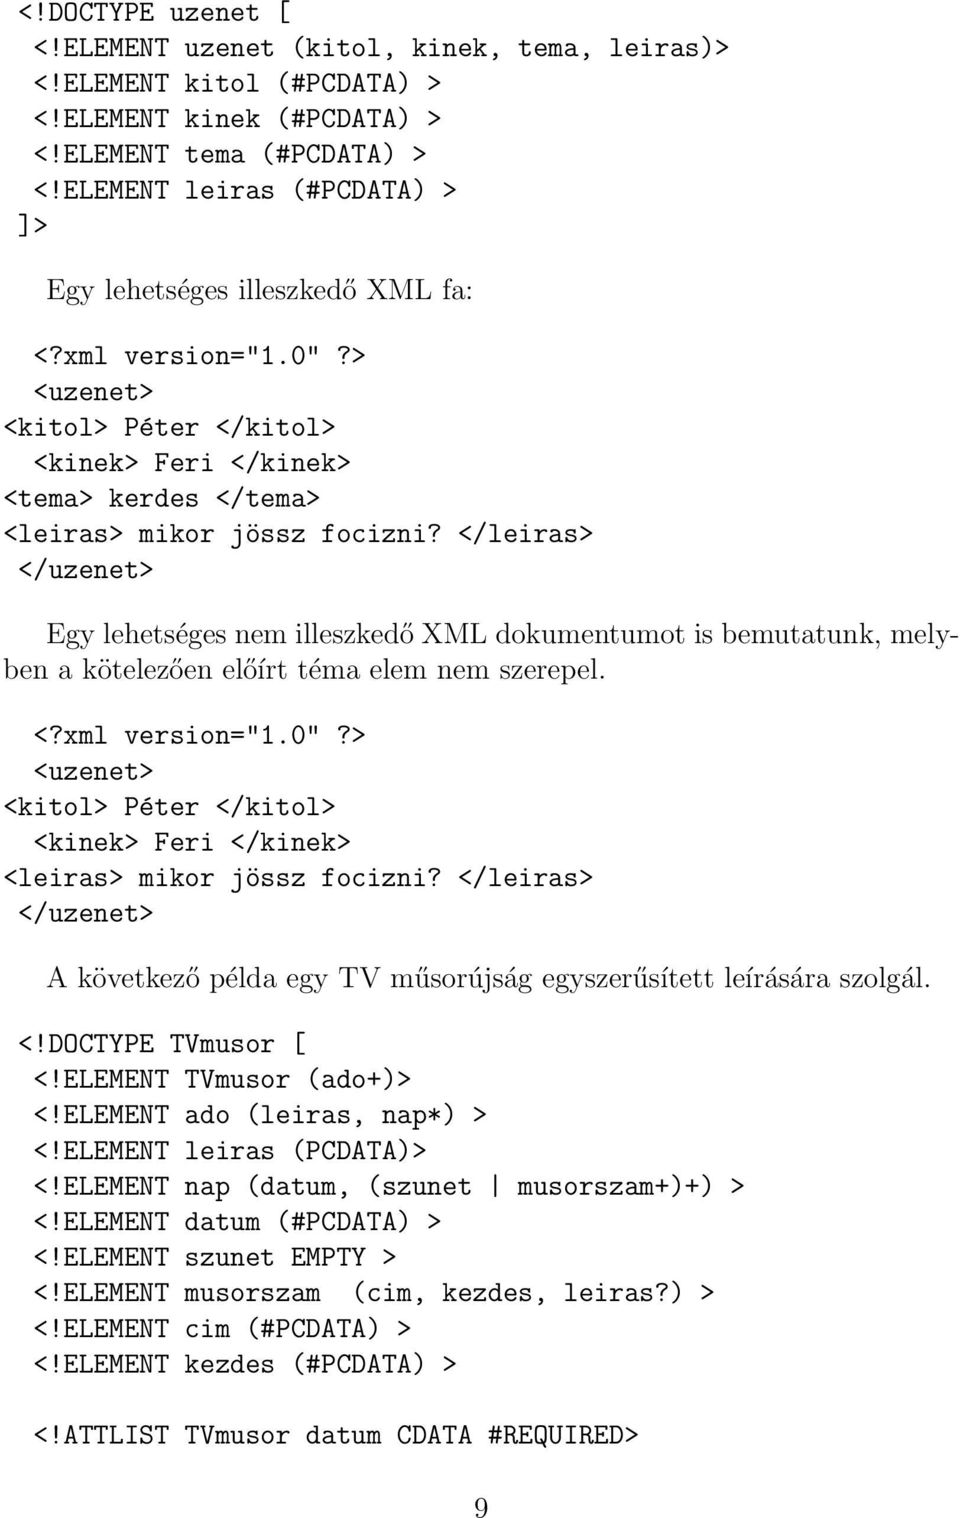 </leiras> </uzenet> Egy lehetséges nem illeszkedő XML dokumentumot is bemutatunk, melyben a kötelezően előírt téma elem nem szerepel. <?xml version="1.0"?